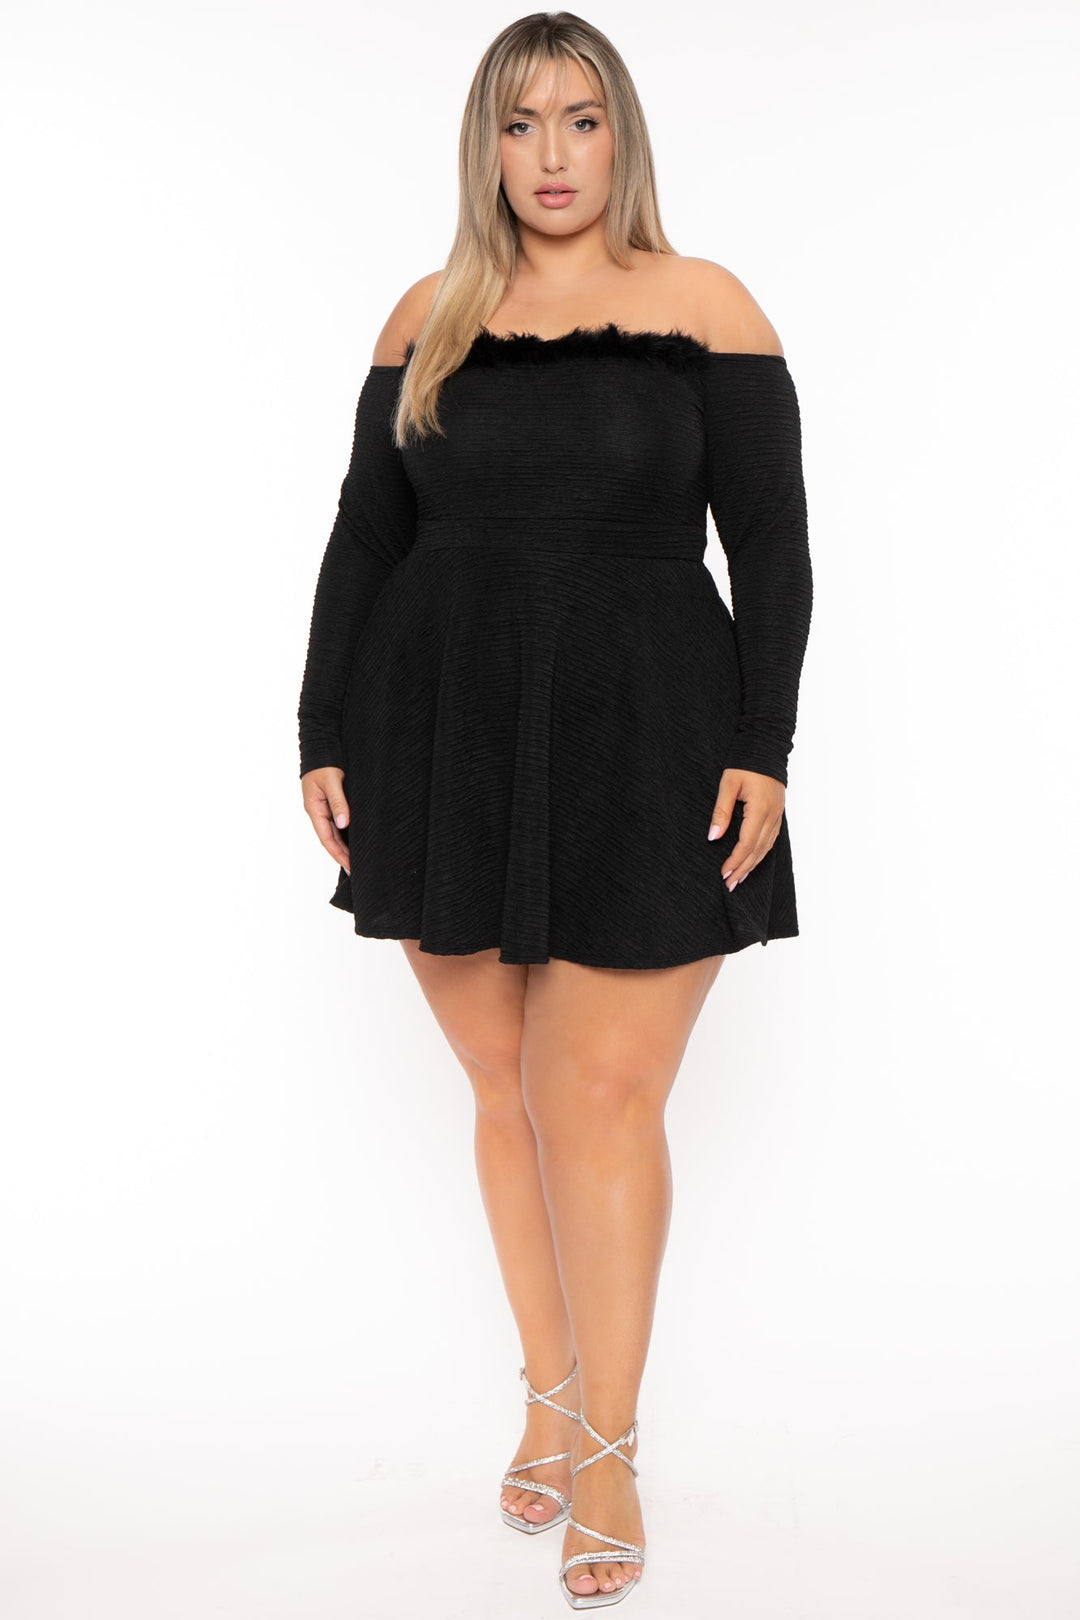 Women's Plus Size Little Black Dresses - Curvy Sense